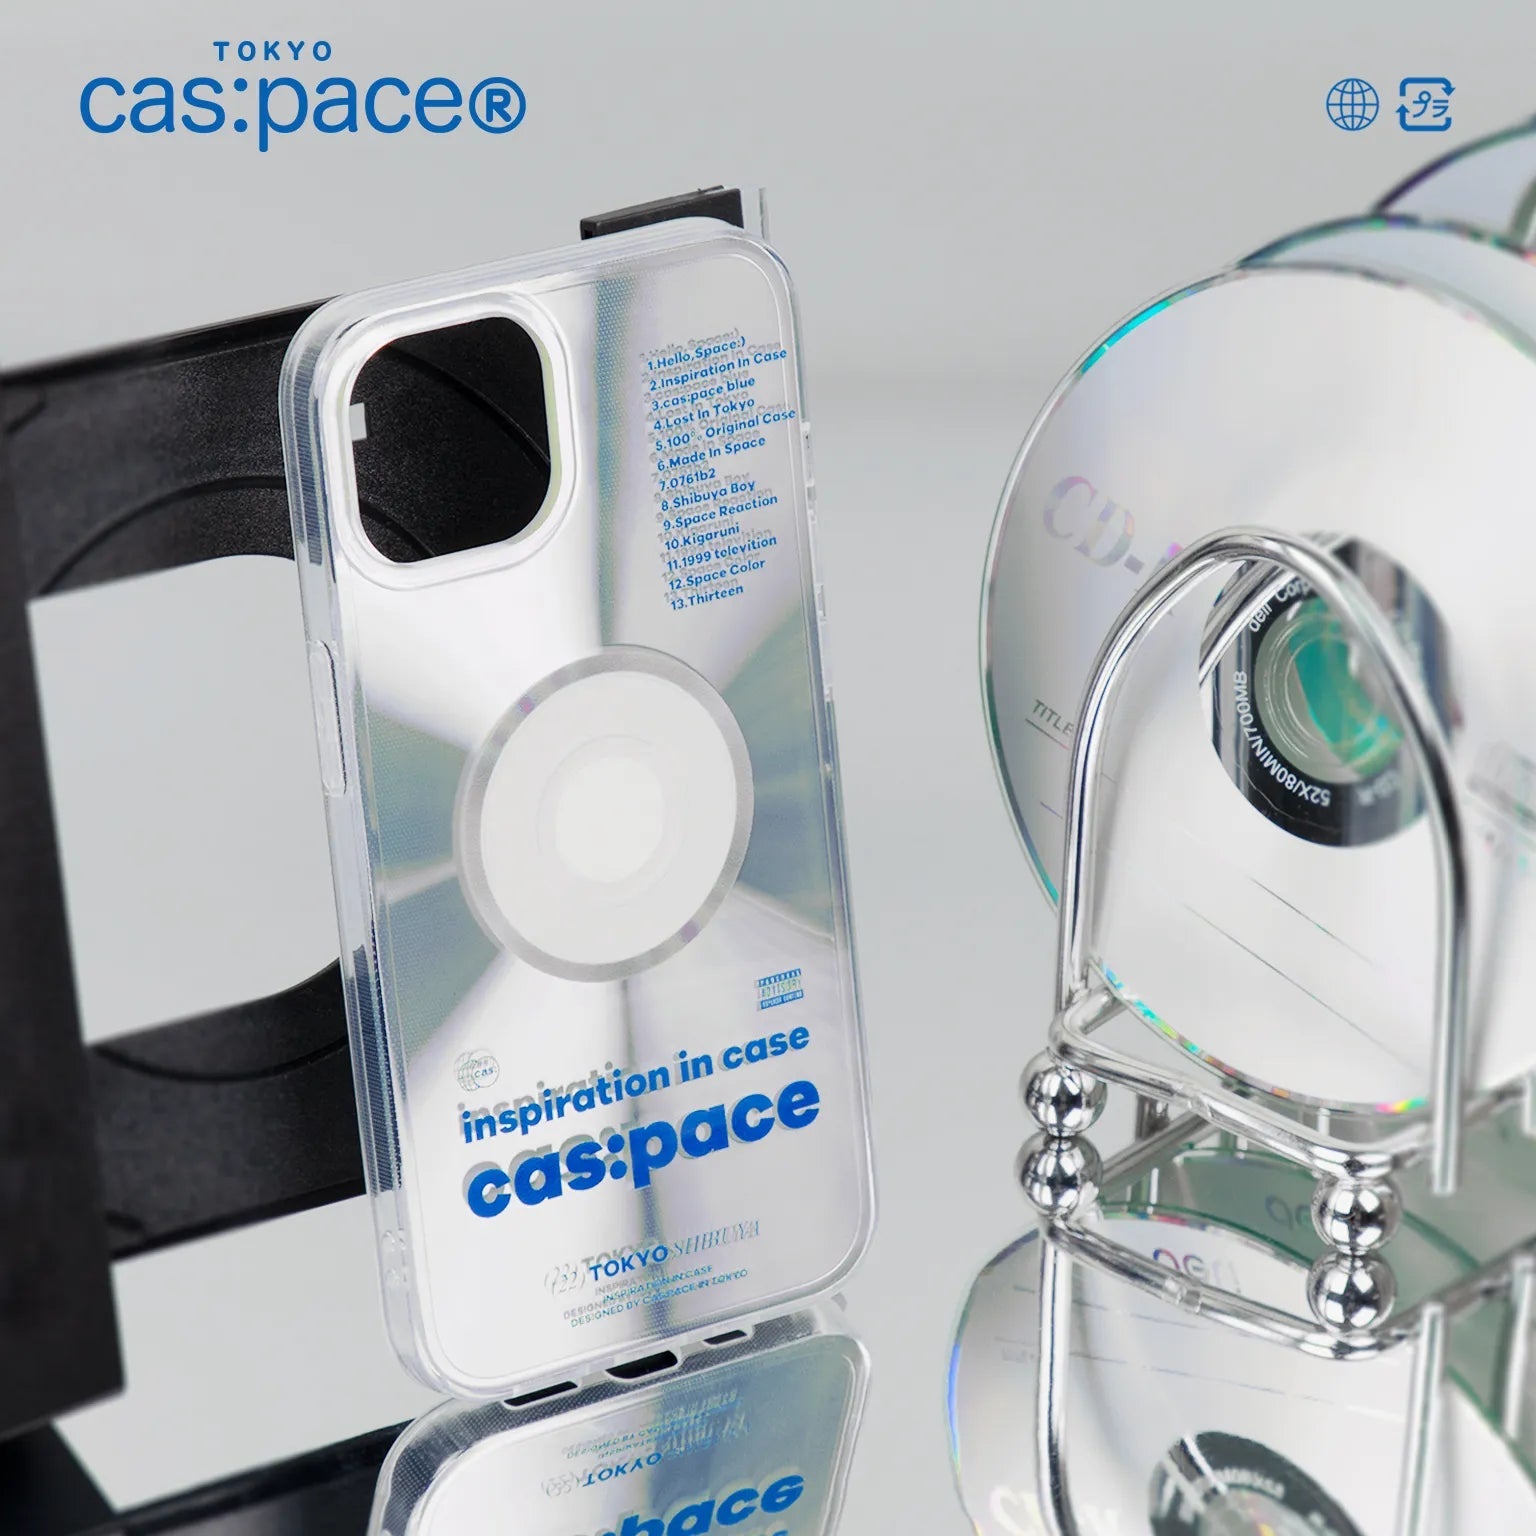 cas:pace 22S/S「cas:pace CD」携帯ケース - cas:pace 殼空間